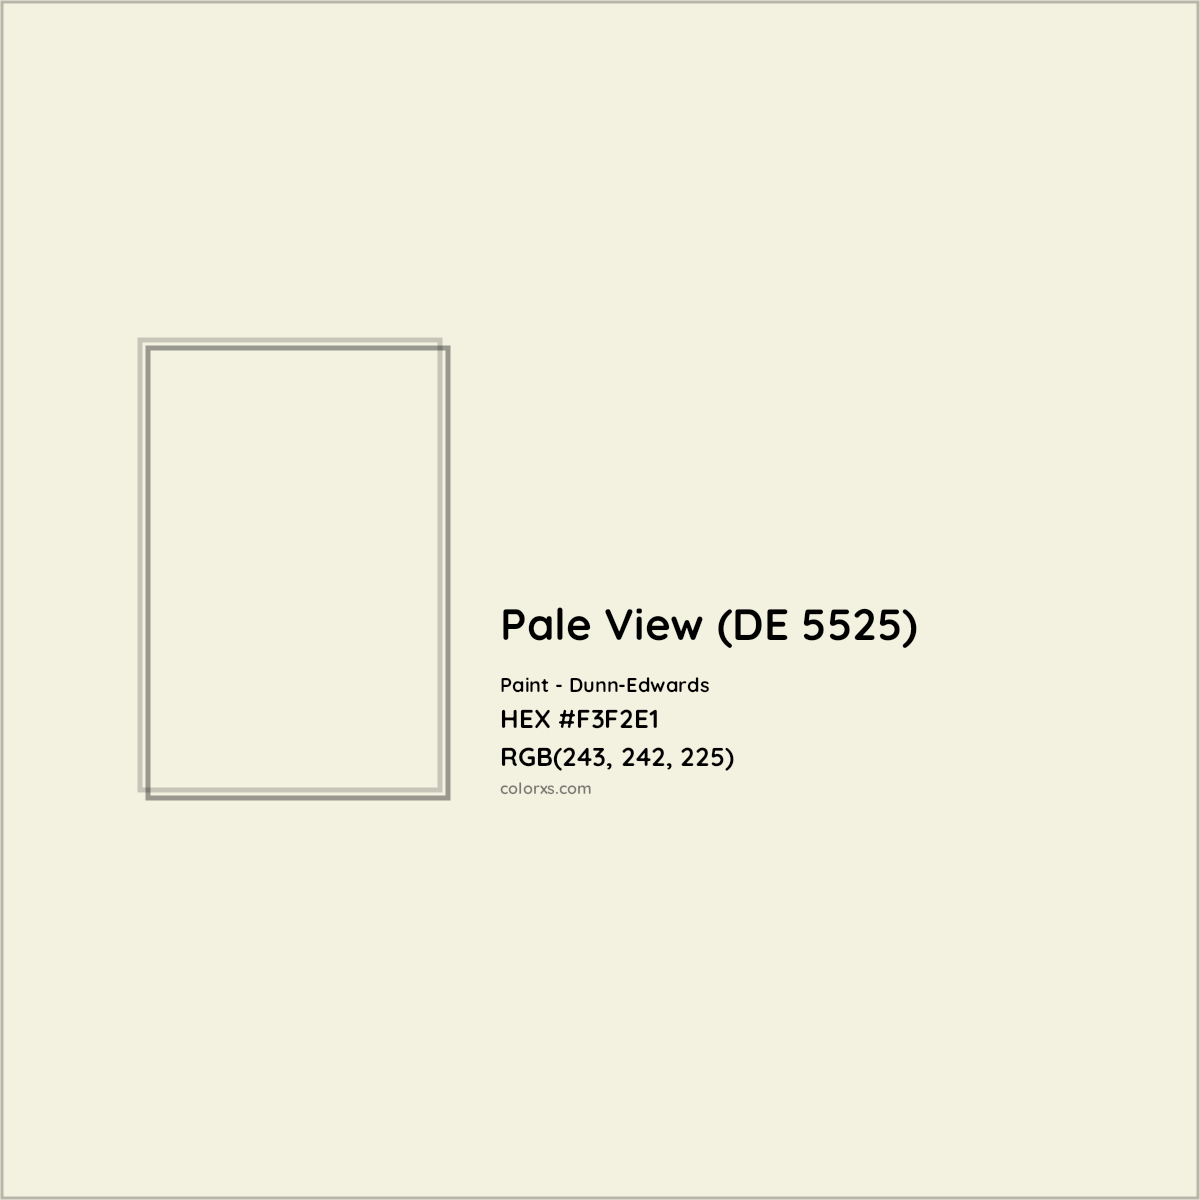 HEX #F3F2E1 Pale View (DE 5525) Paint Dunn-Edwards - Color Code